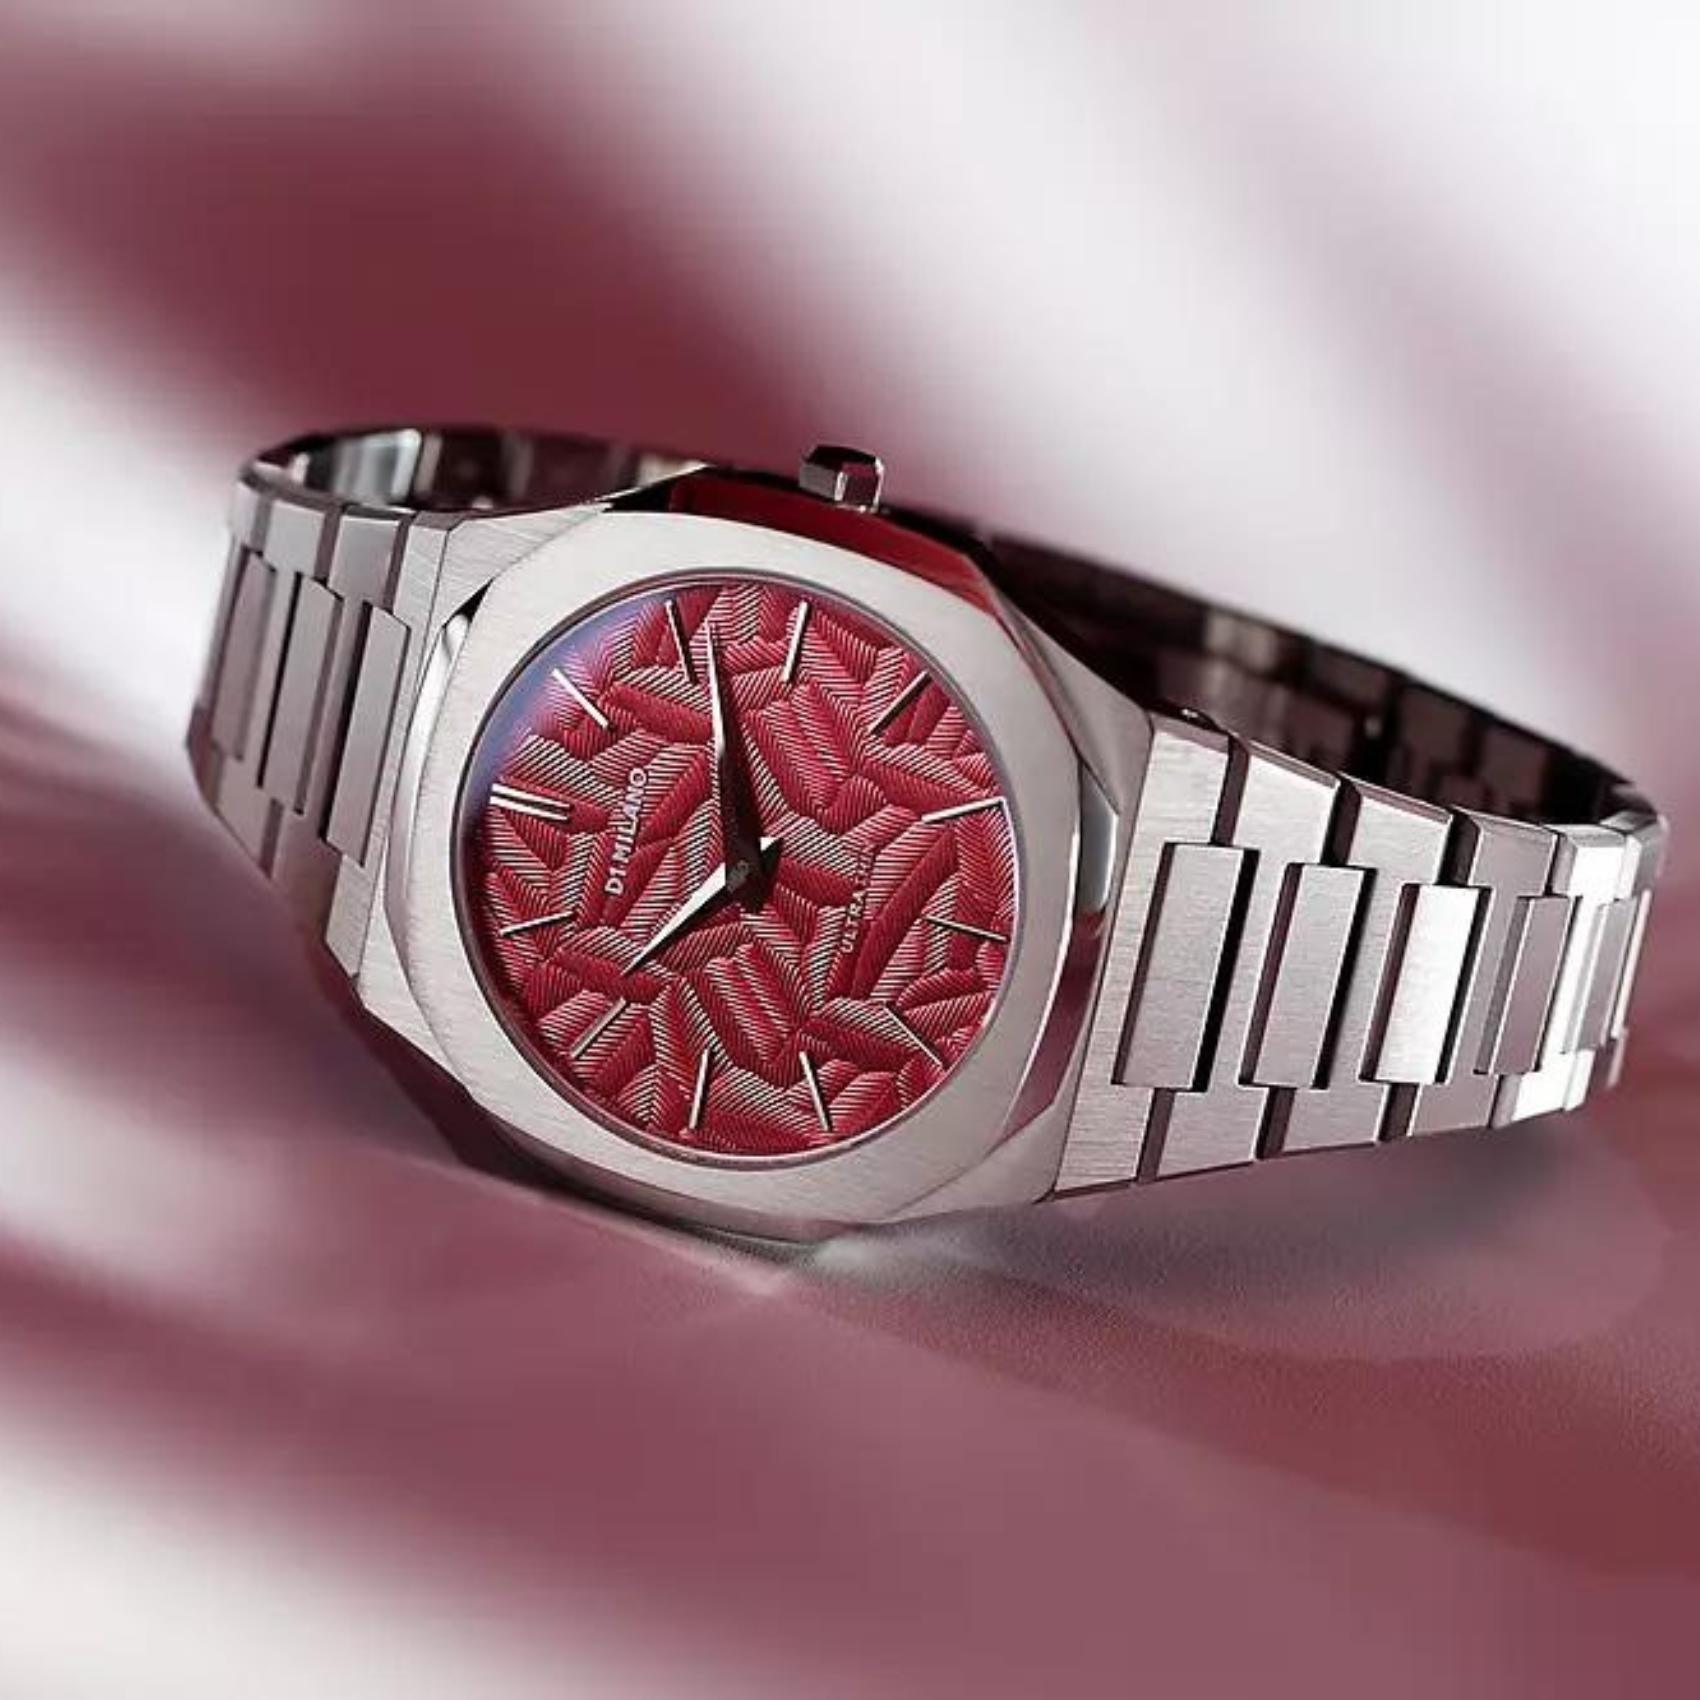 Αντρικό ρολόι D1 Milano Ultra Thin Barn Red D1-UTBJ33 με ασημί ατσάλινο μπρασελέ και κόκκινο καντράν 40mm με οκτάγωνο σχήμα.